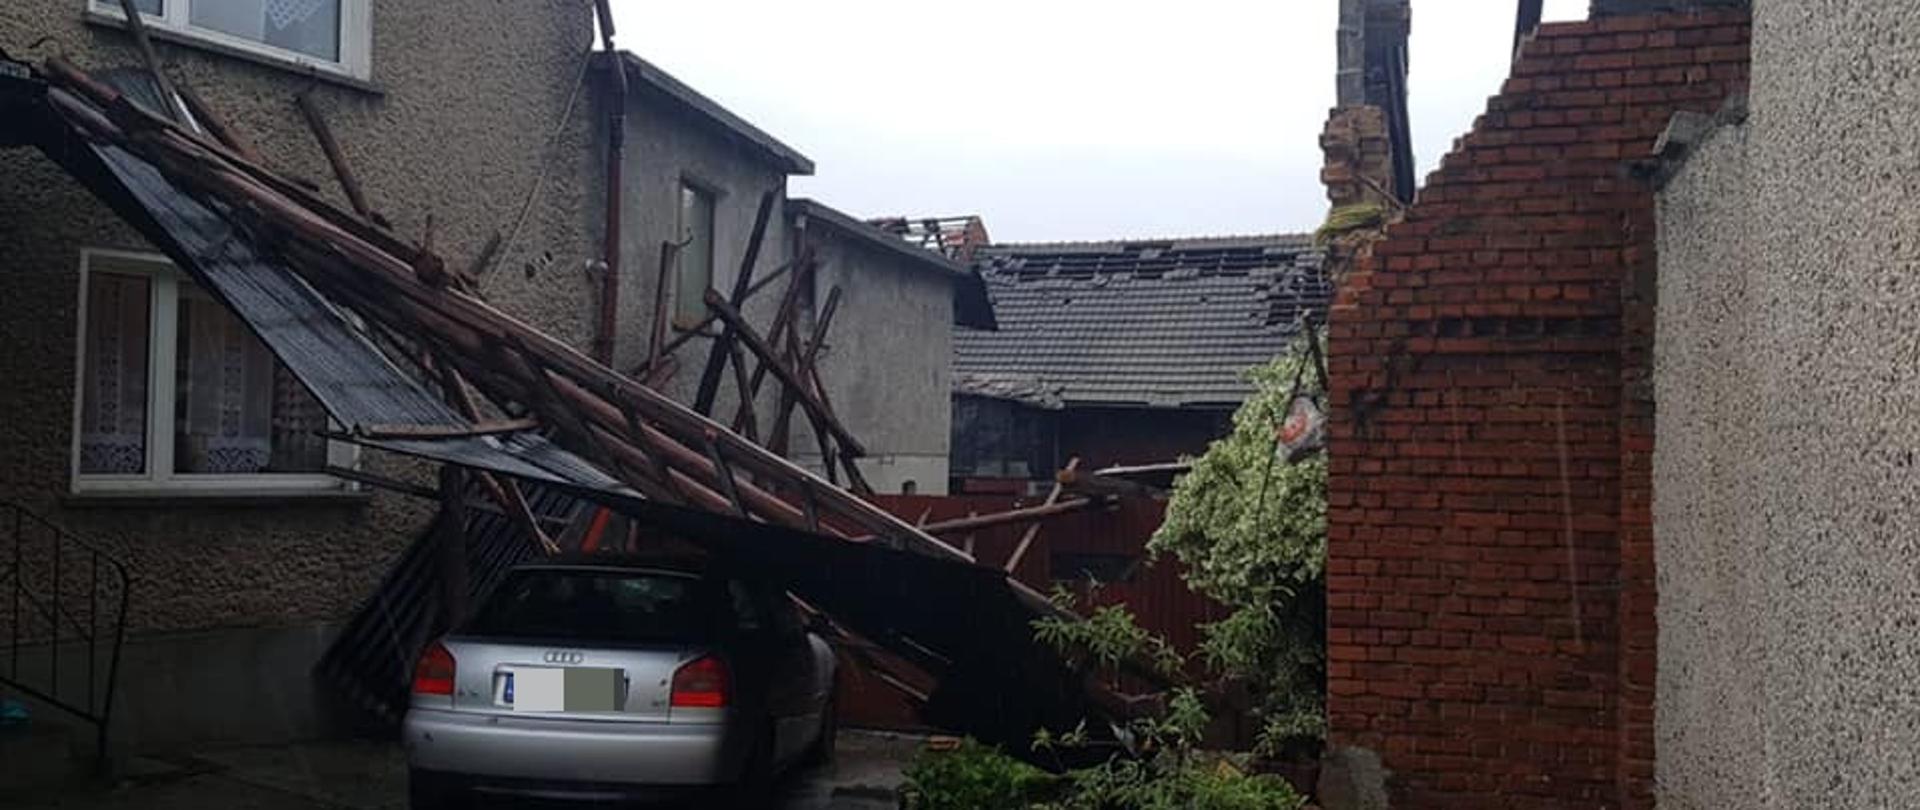 Zdjęcie przedstawia zerwany dach stodoły, który zatrzymał się na samochodzie osobowym na posesji u sąsiada.